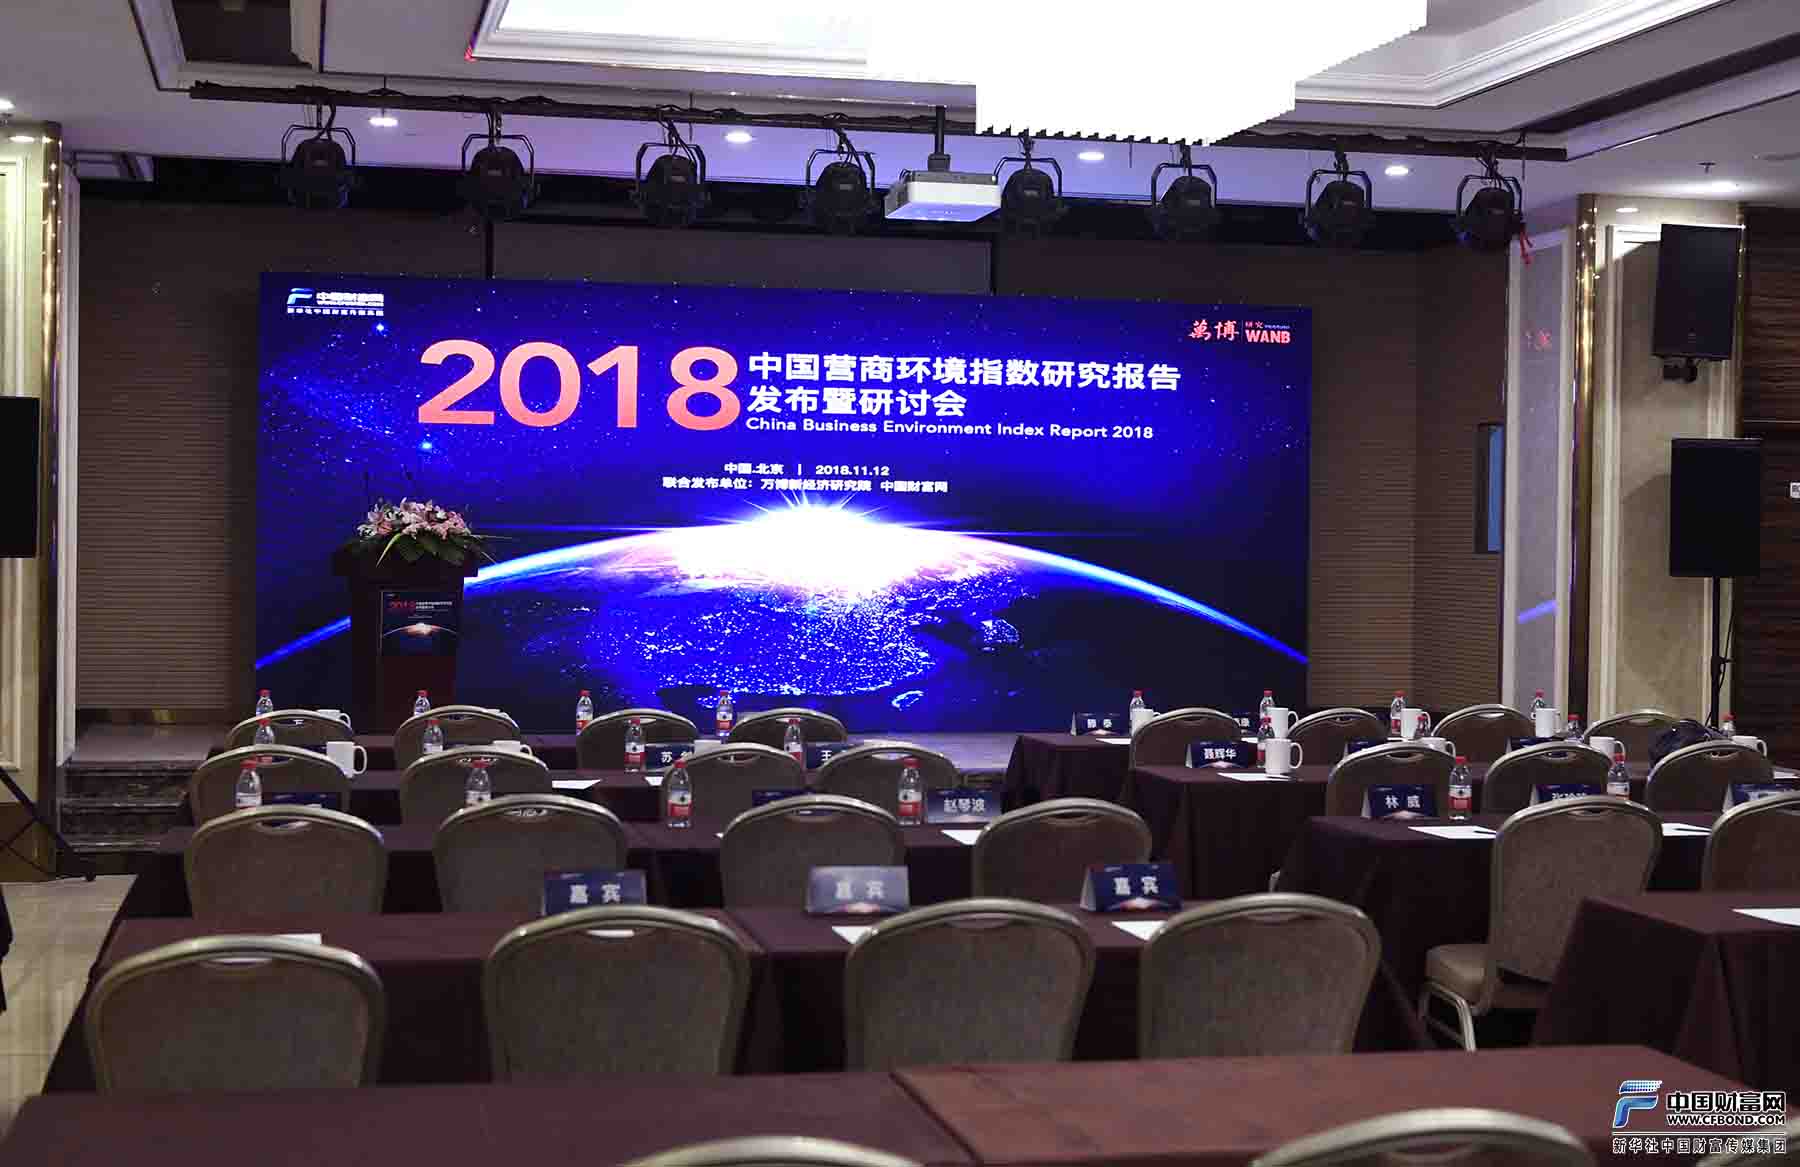 《2018年中国营商环境指数研究报告》发布暨研讨会会场